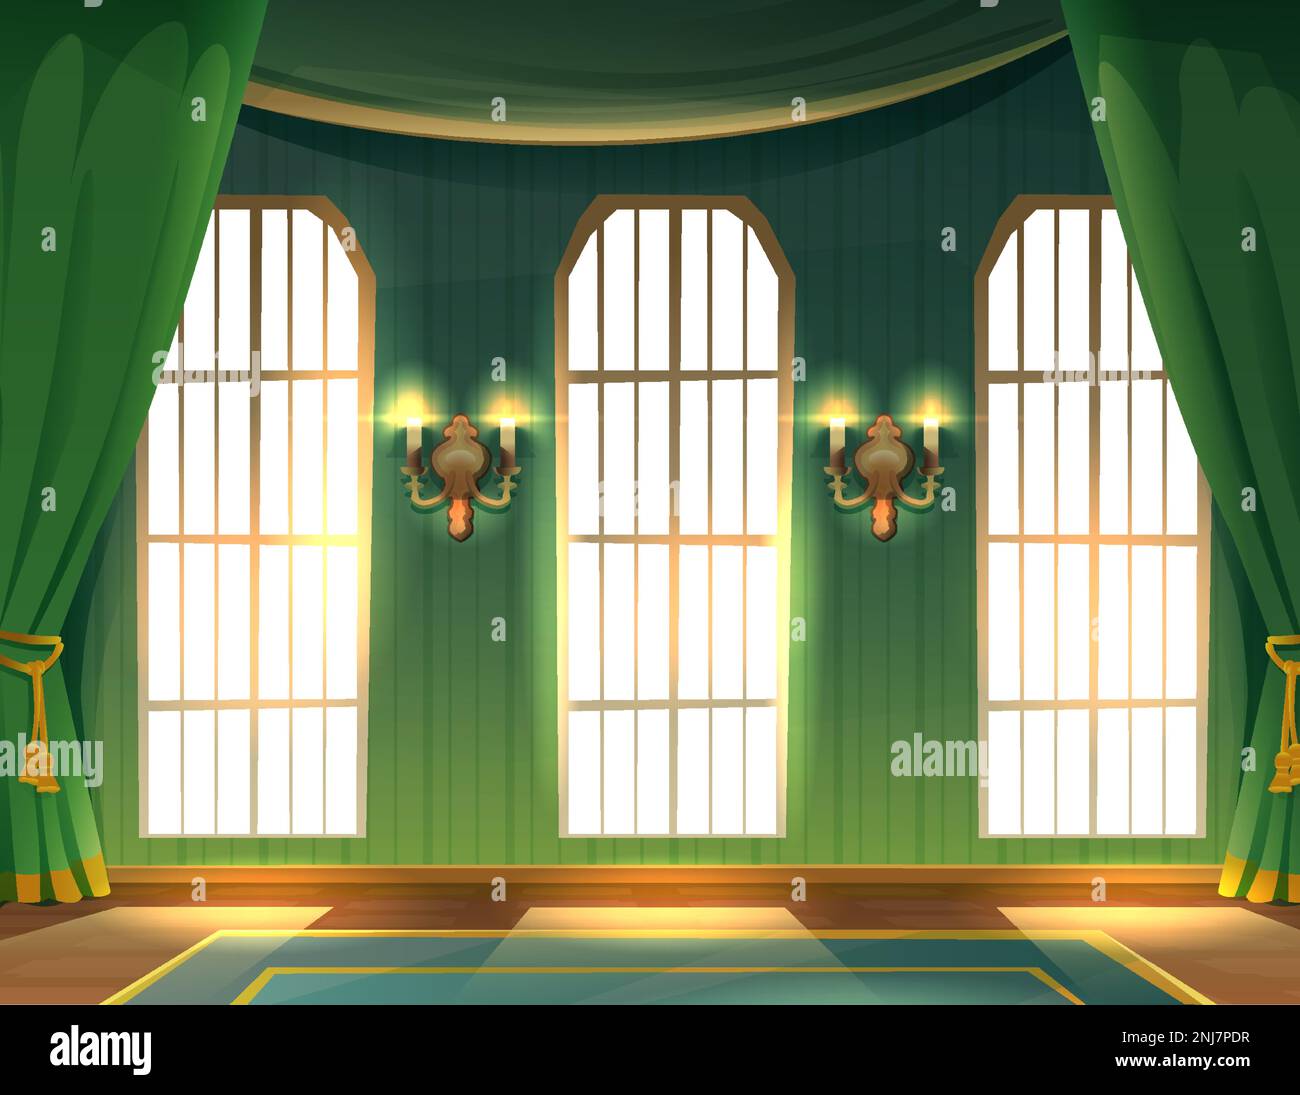 Vektor-Cartoon-Style-Illustration. Innenraum der Burg. Halle luxuriöser mittelalterlicher Palast mit großen Fenstern und langen grünen Vorhängen mit Wandlampen. Stock Vektor